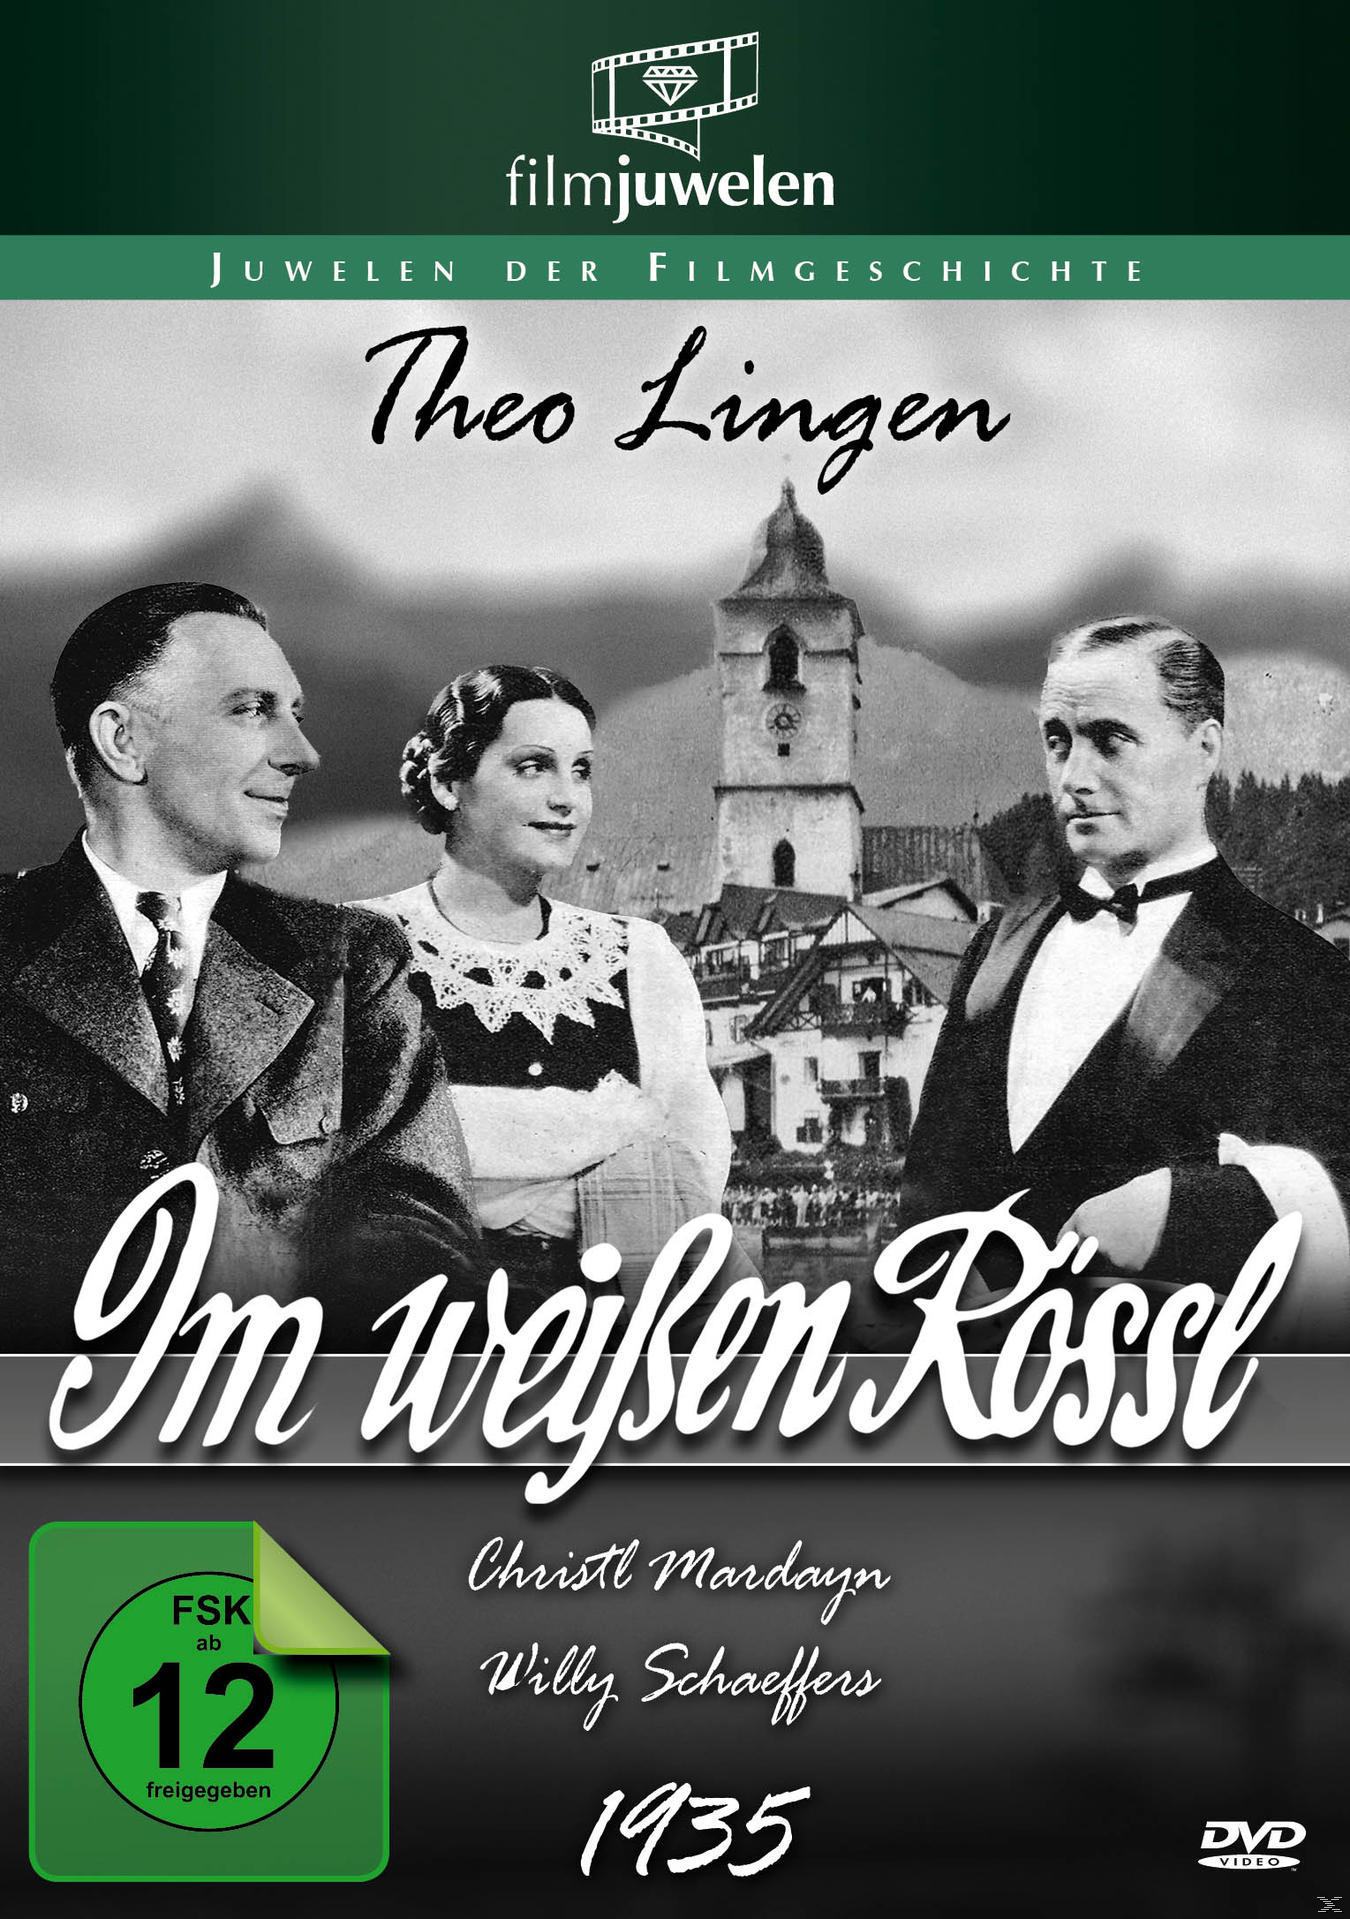 IM WEISSEN DVD (1935) (FILMJUWELEN) RÖSSL